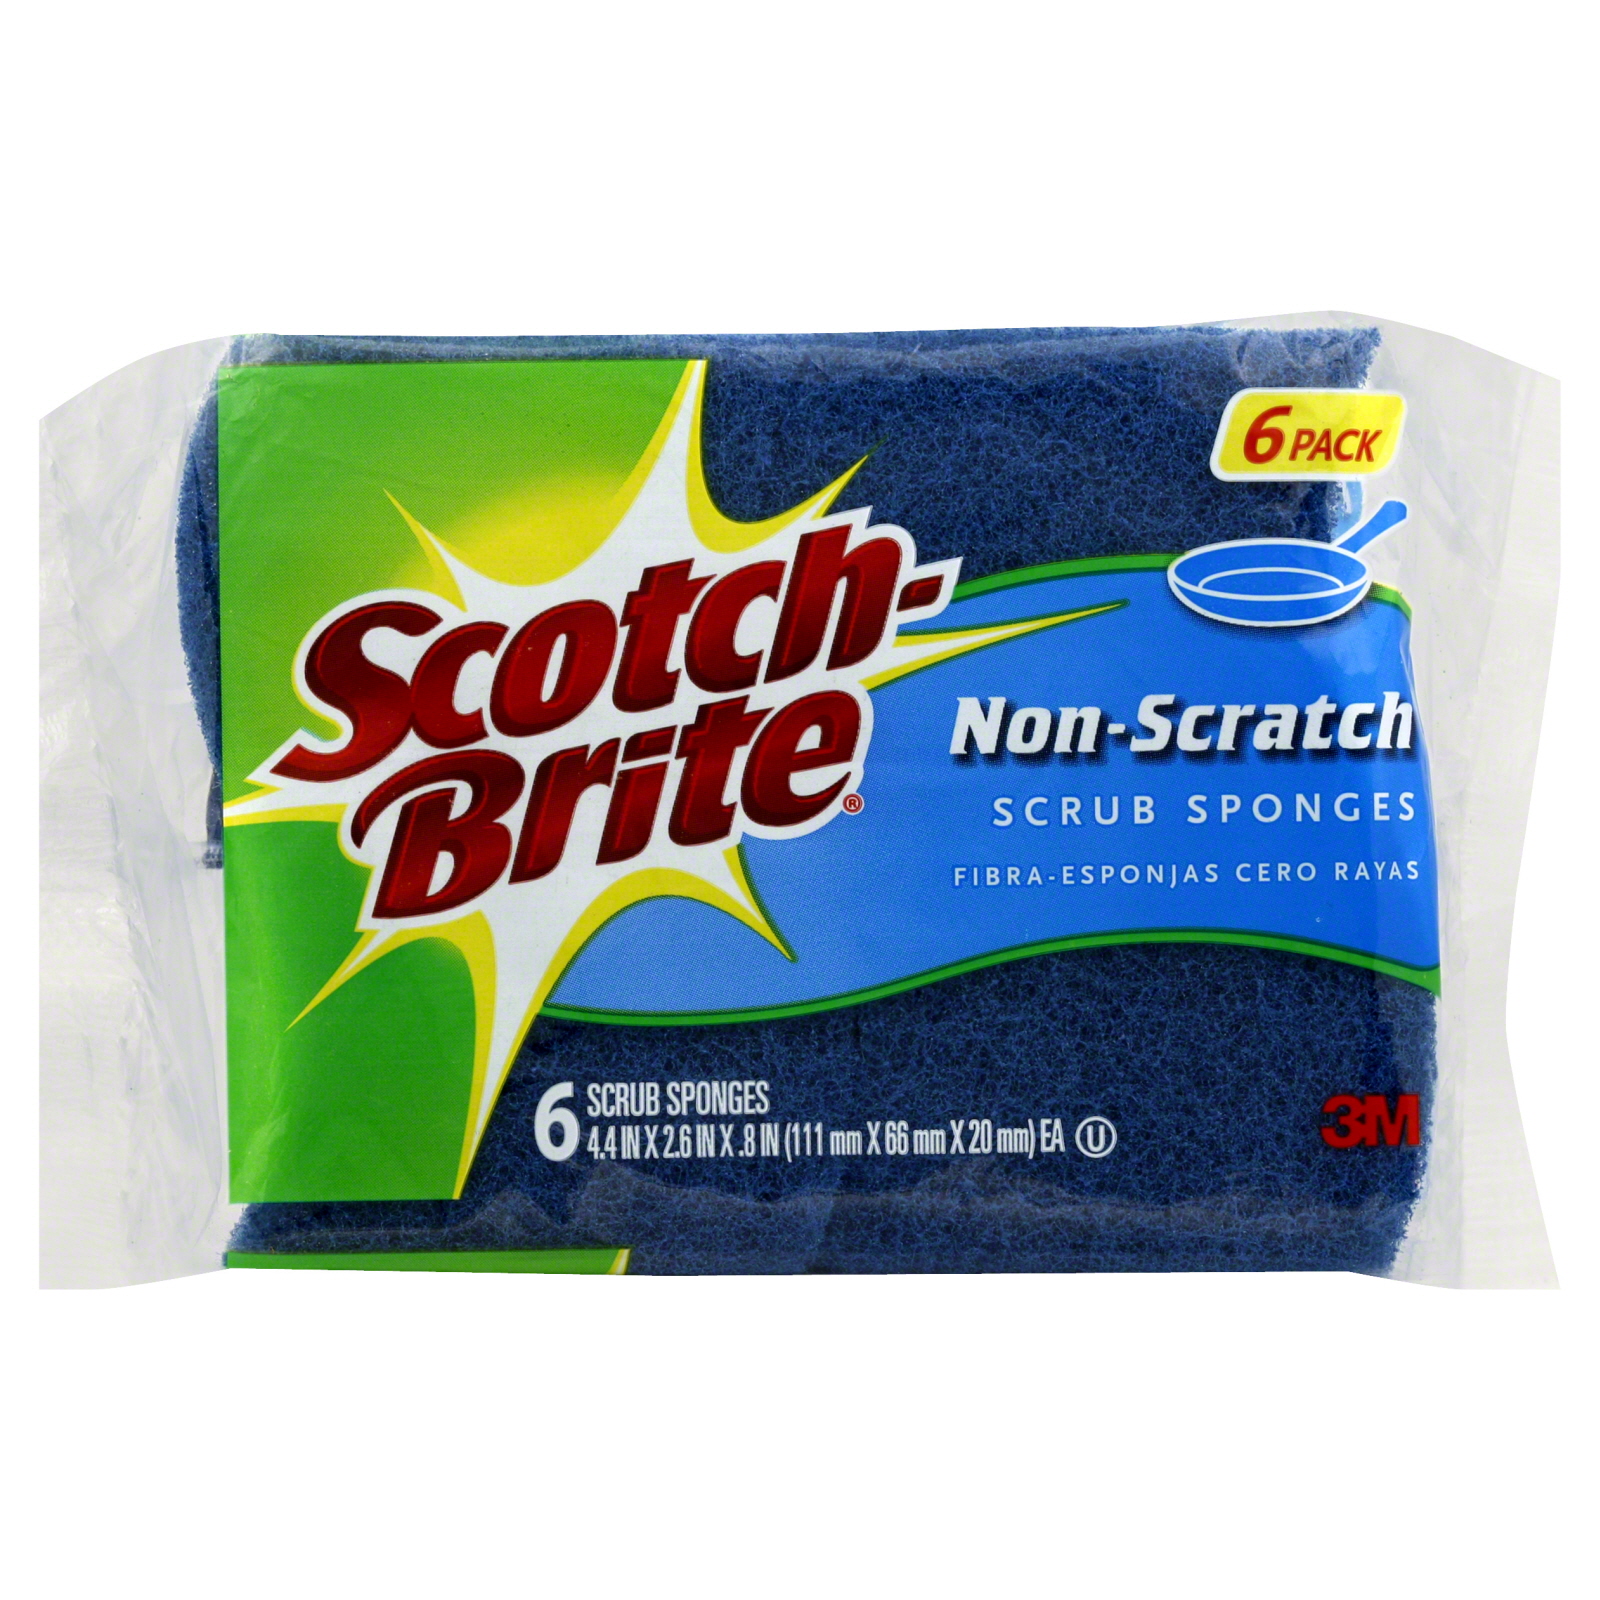 Scotch-Brite Scrub Sponges, Non-Scratch, 6 sponges